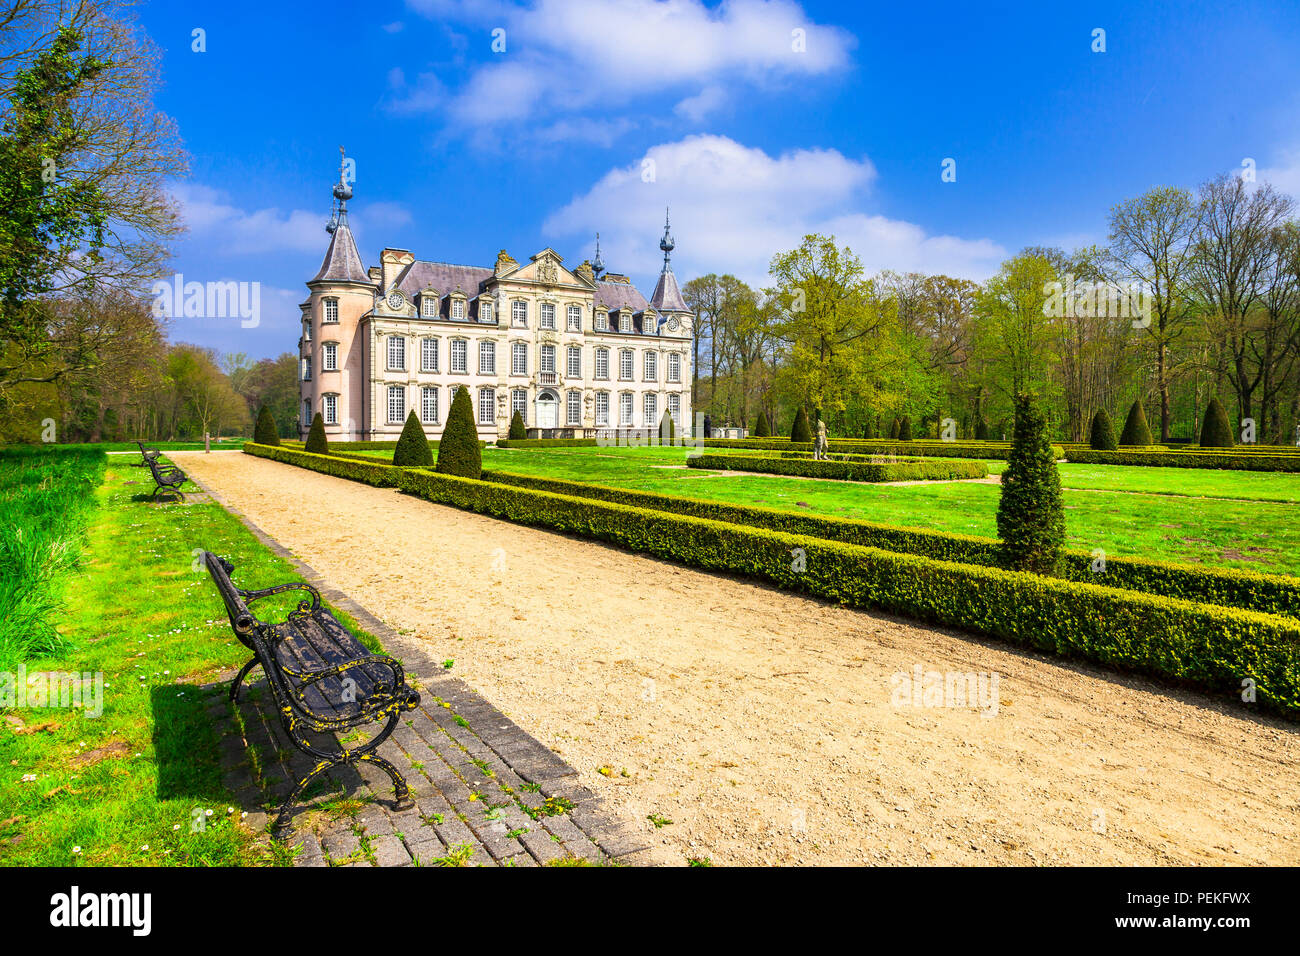 Elegant Poeke medieval castle,view with gardens,Belgium. Stock Photo